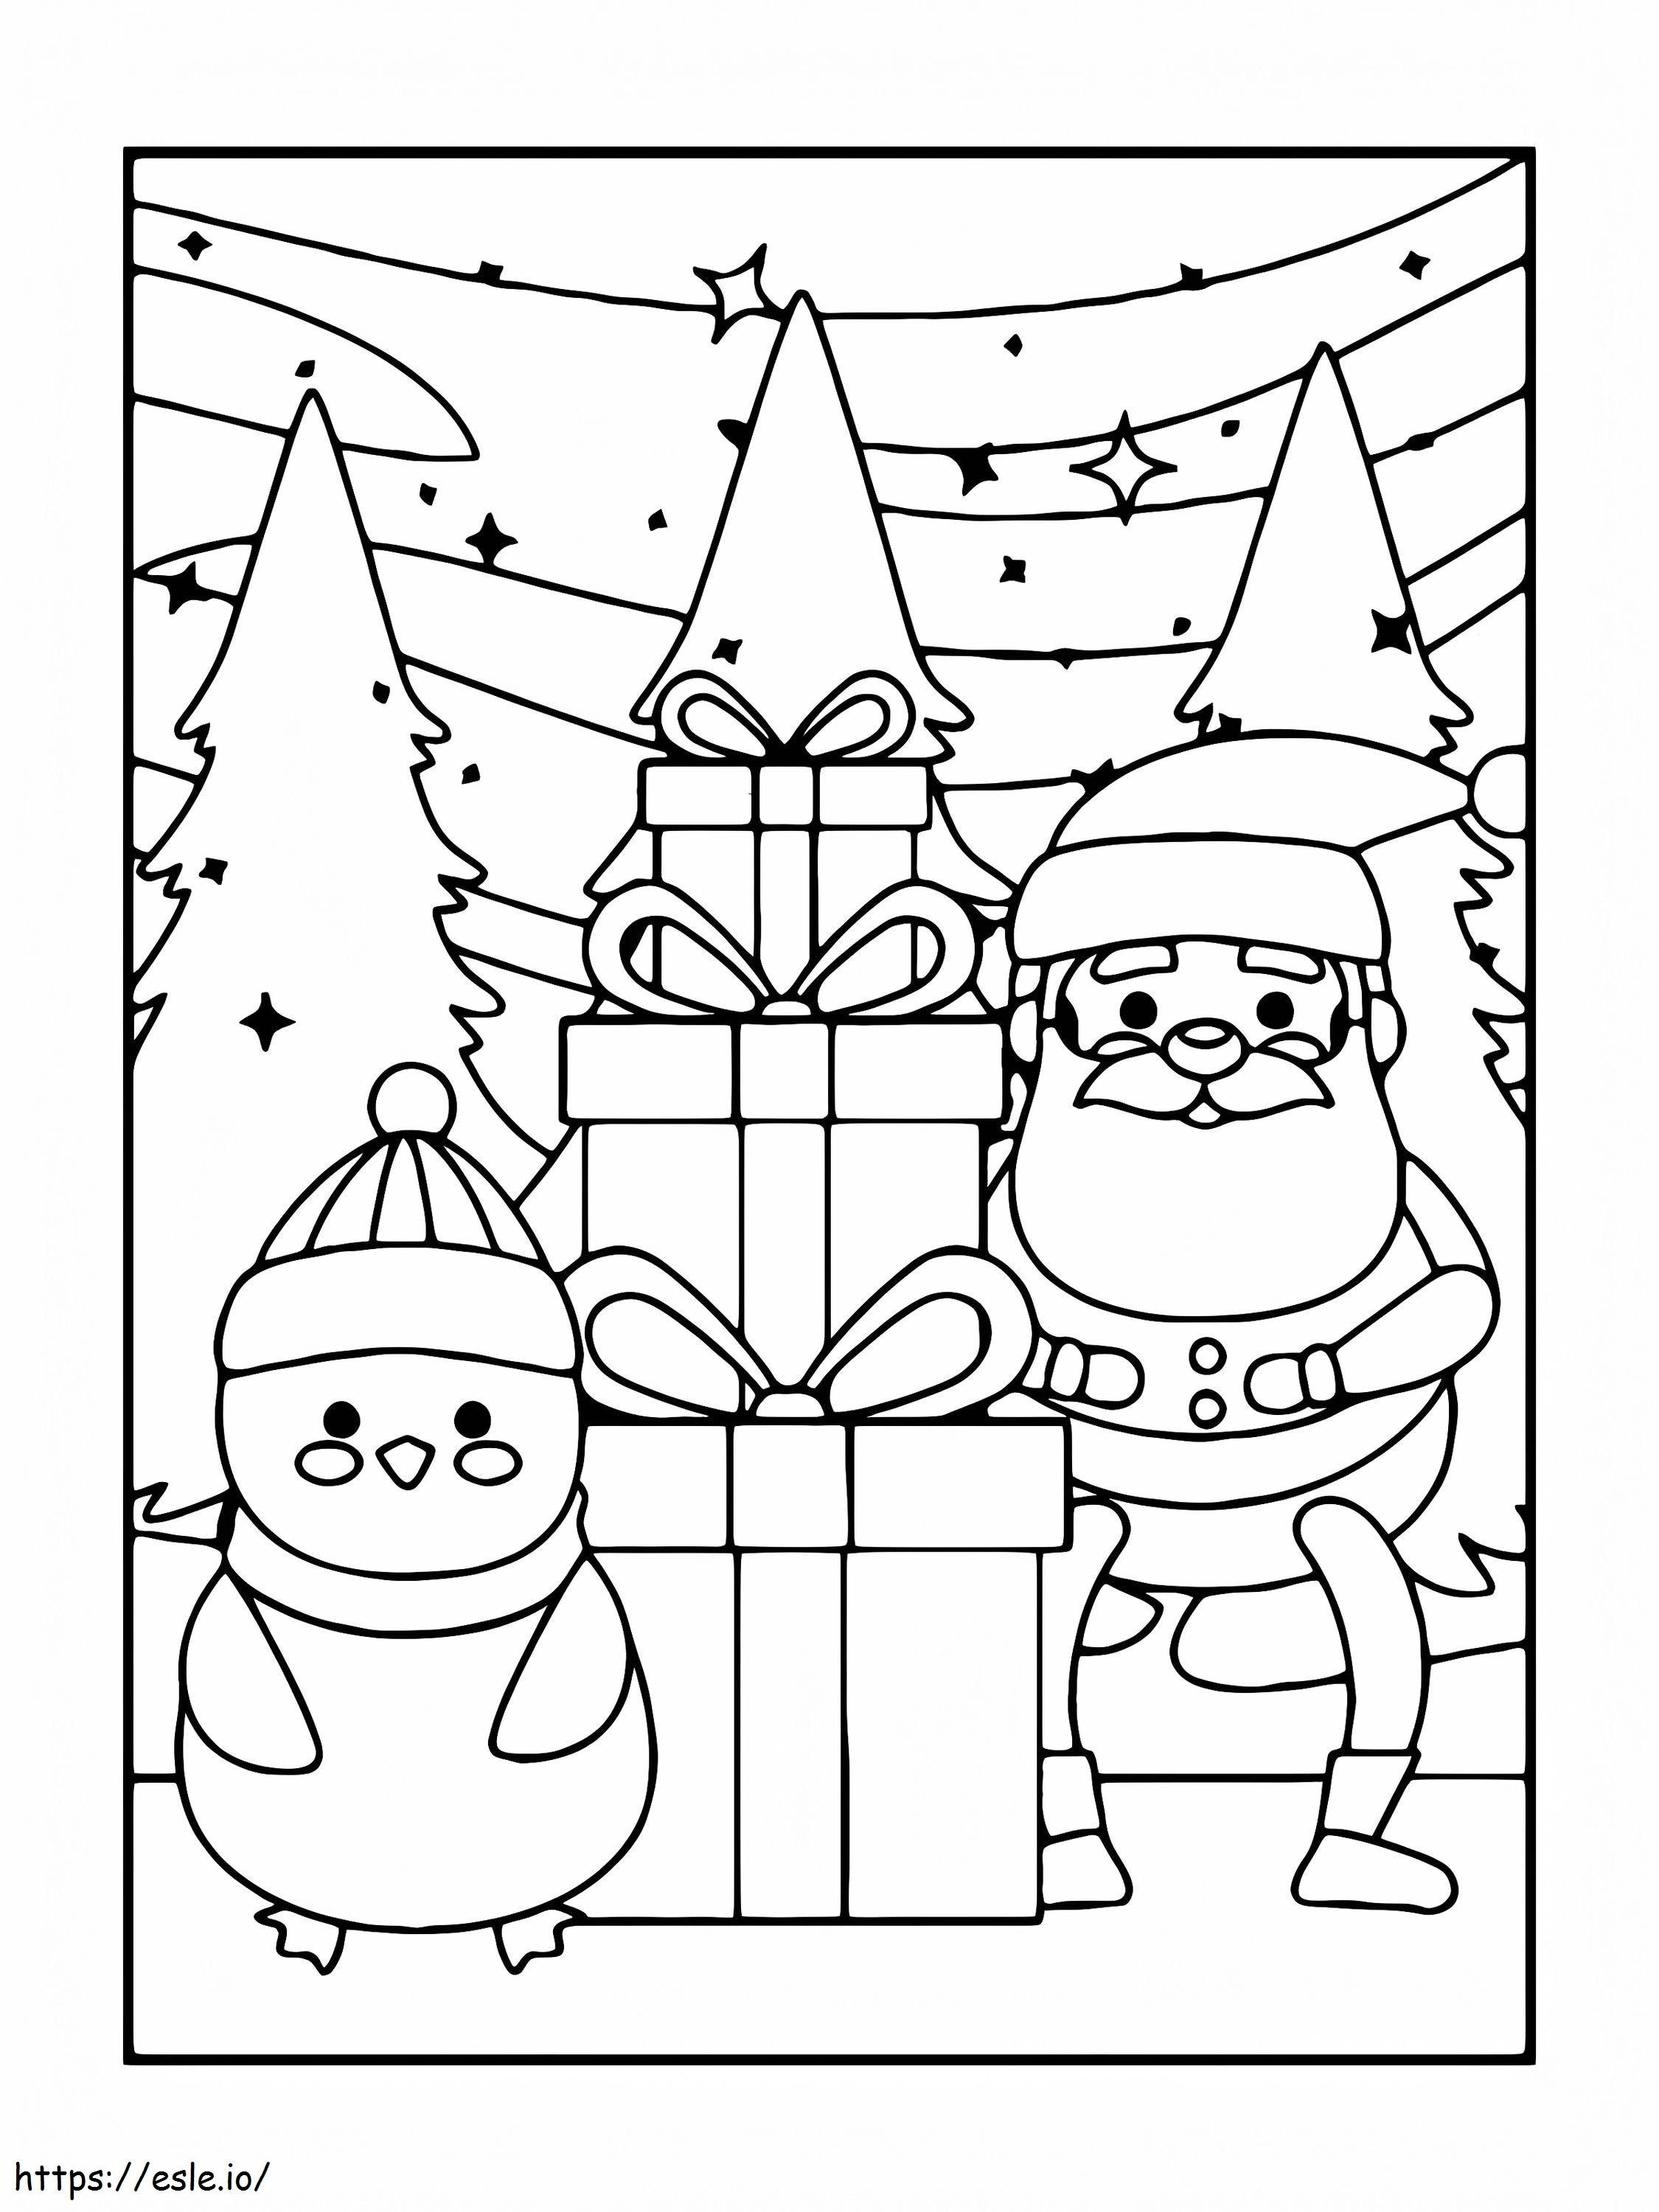 Regalo e pupazzo di neve di Babbo Natale da colorare